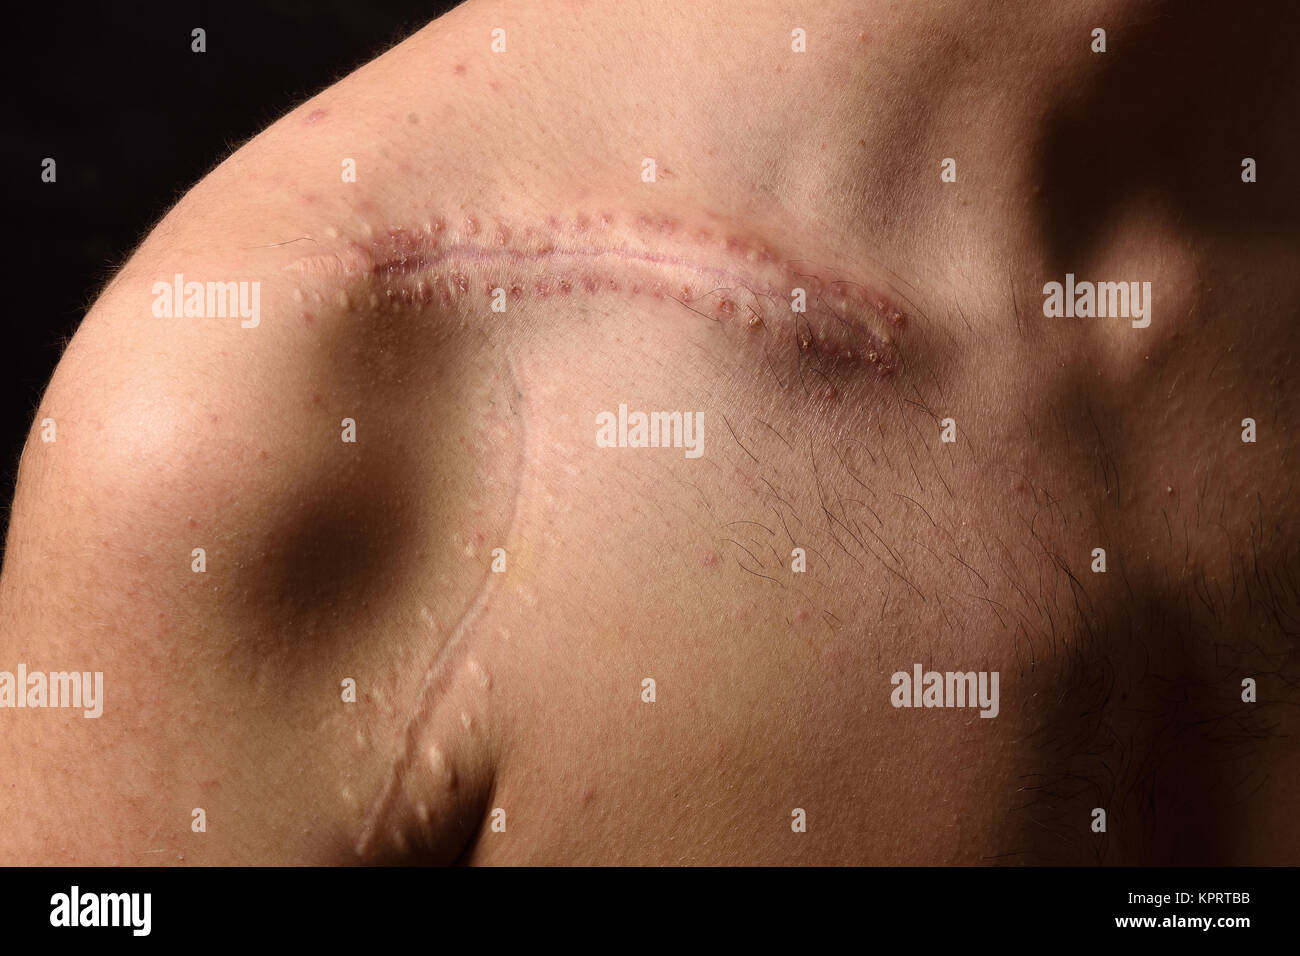 Détail d'une cicatrice sur la clavicule Photo Stock - Alamy